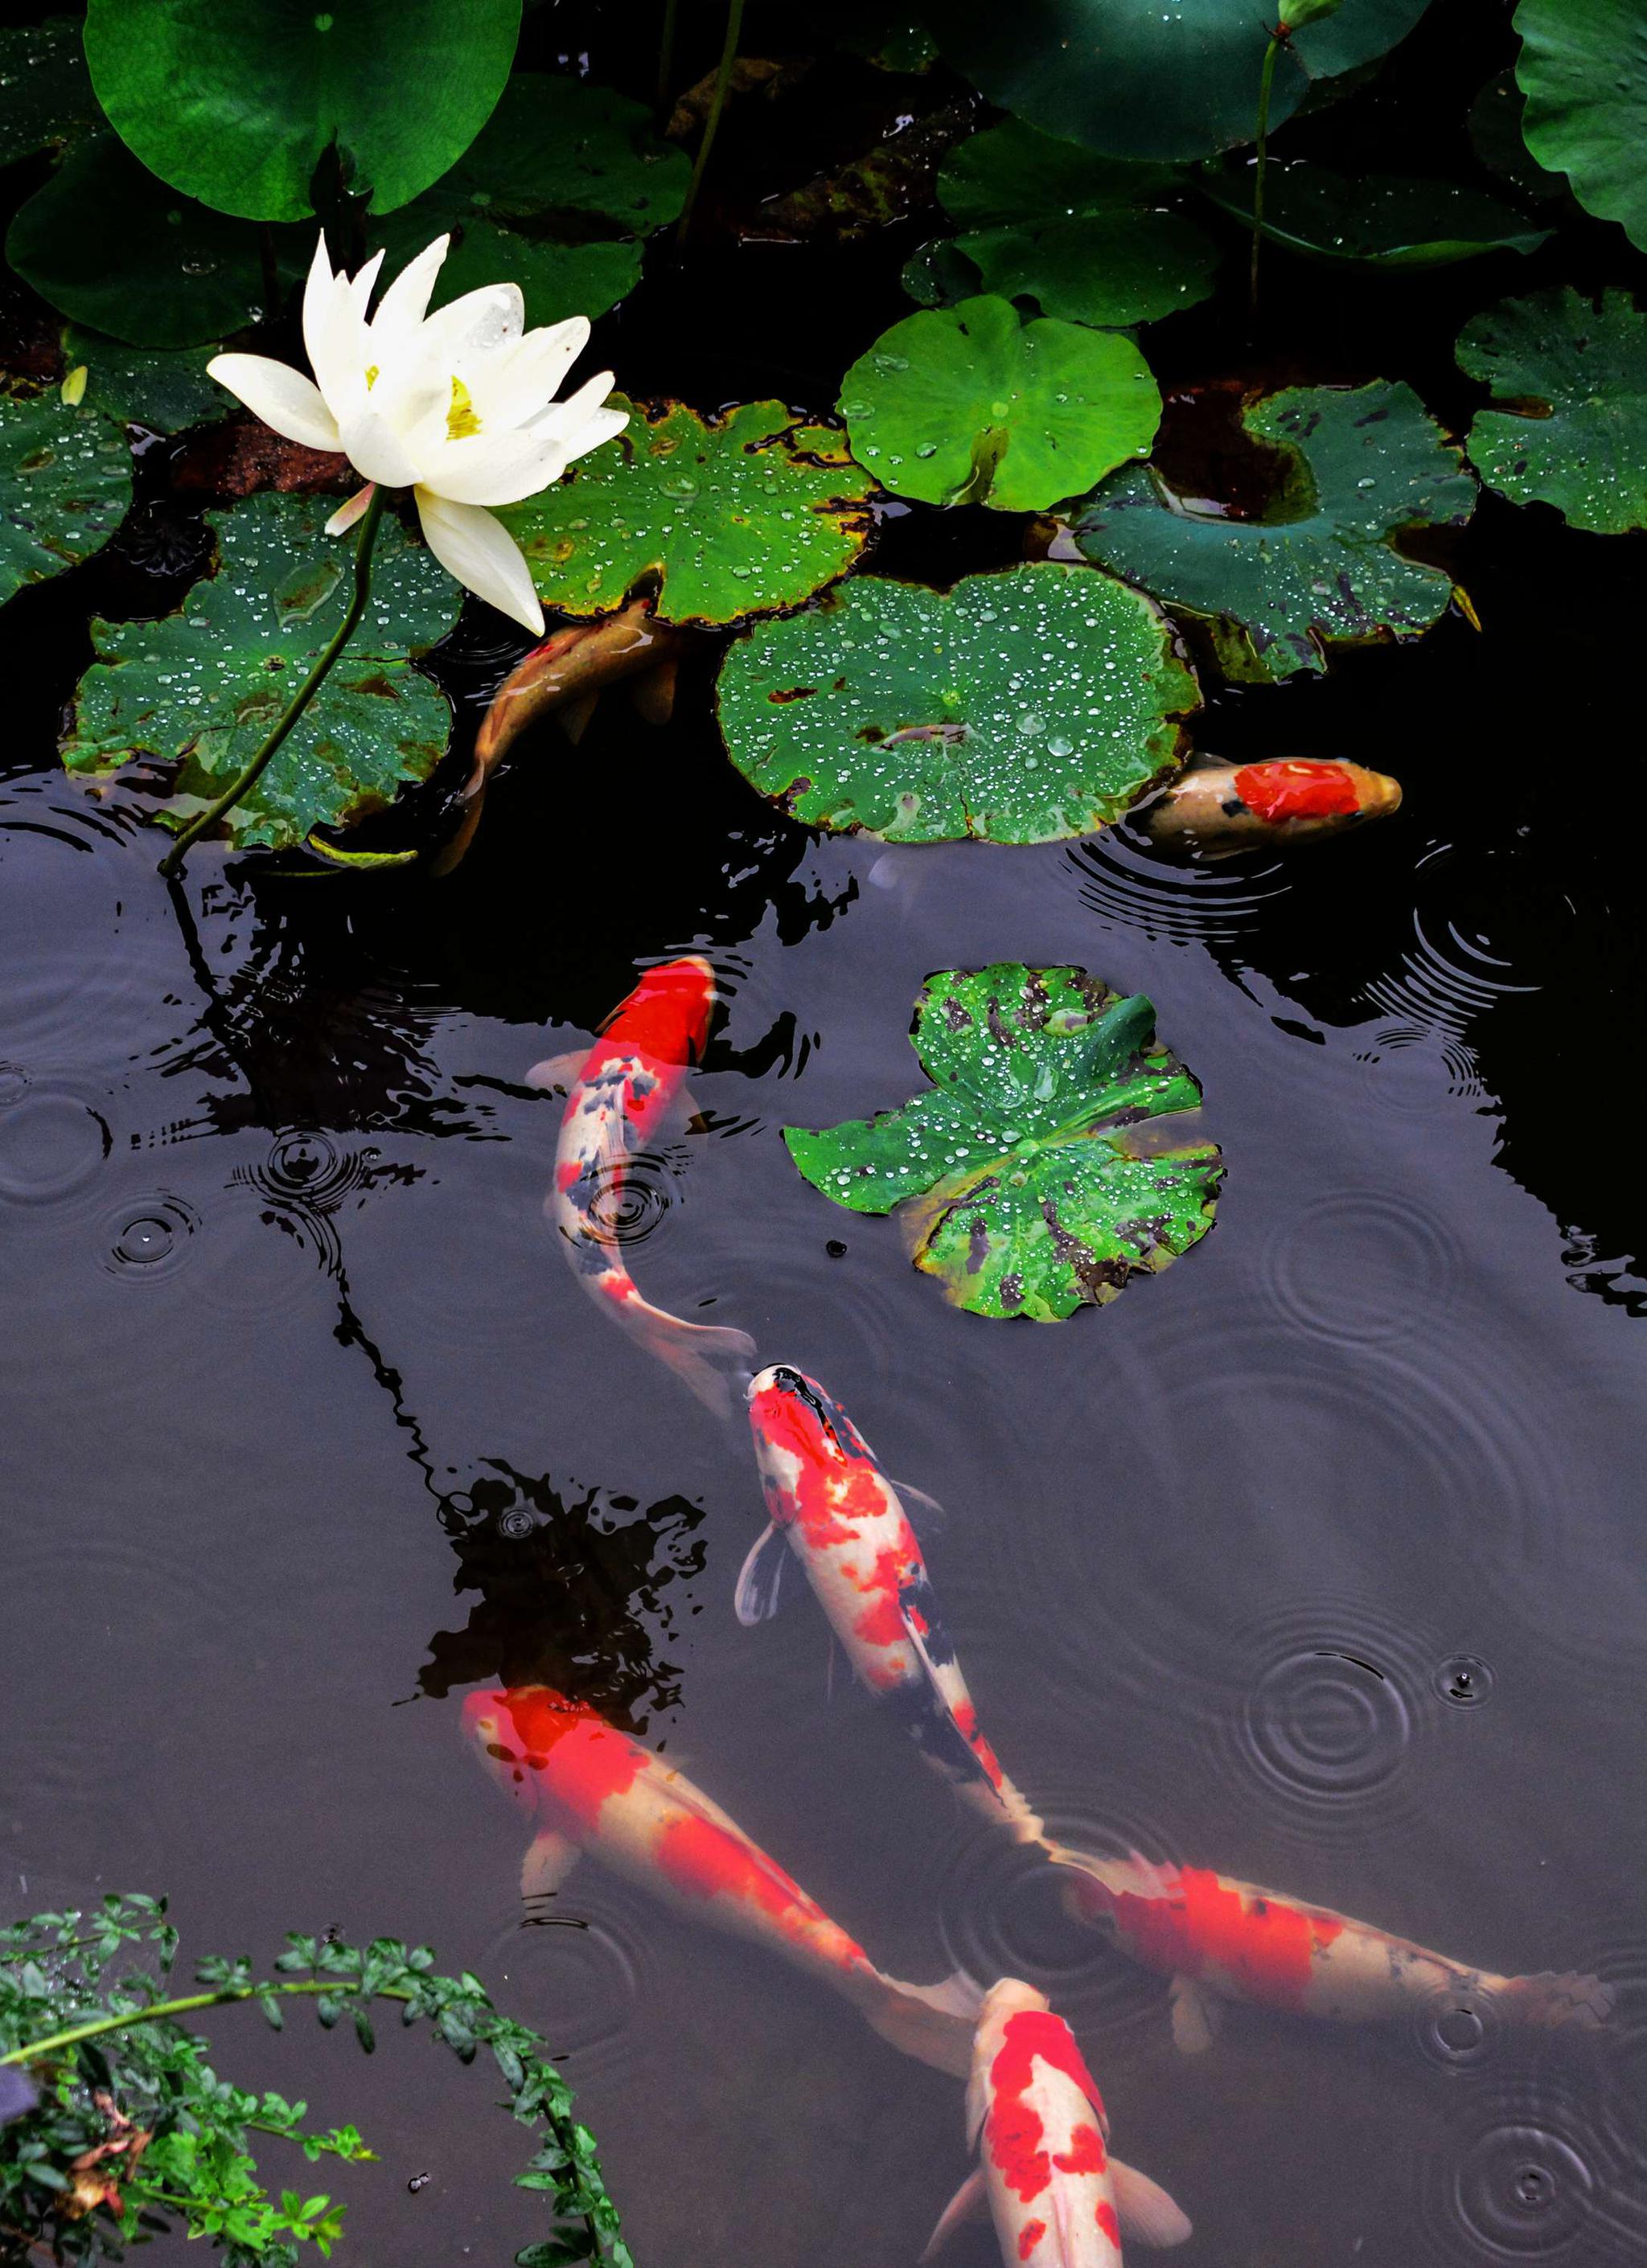 图片素材 : 池塘, 鱼, 动物群, 日本花园, 锦鲤, 海洋生物学 4608x3456 - - 809658 - 素材中国, 高清壁纸 ...